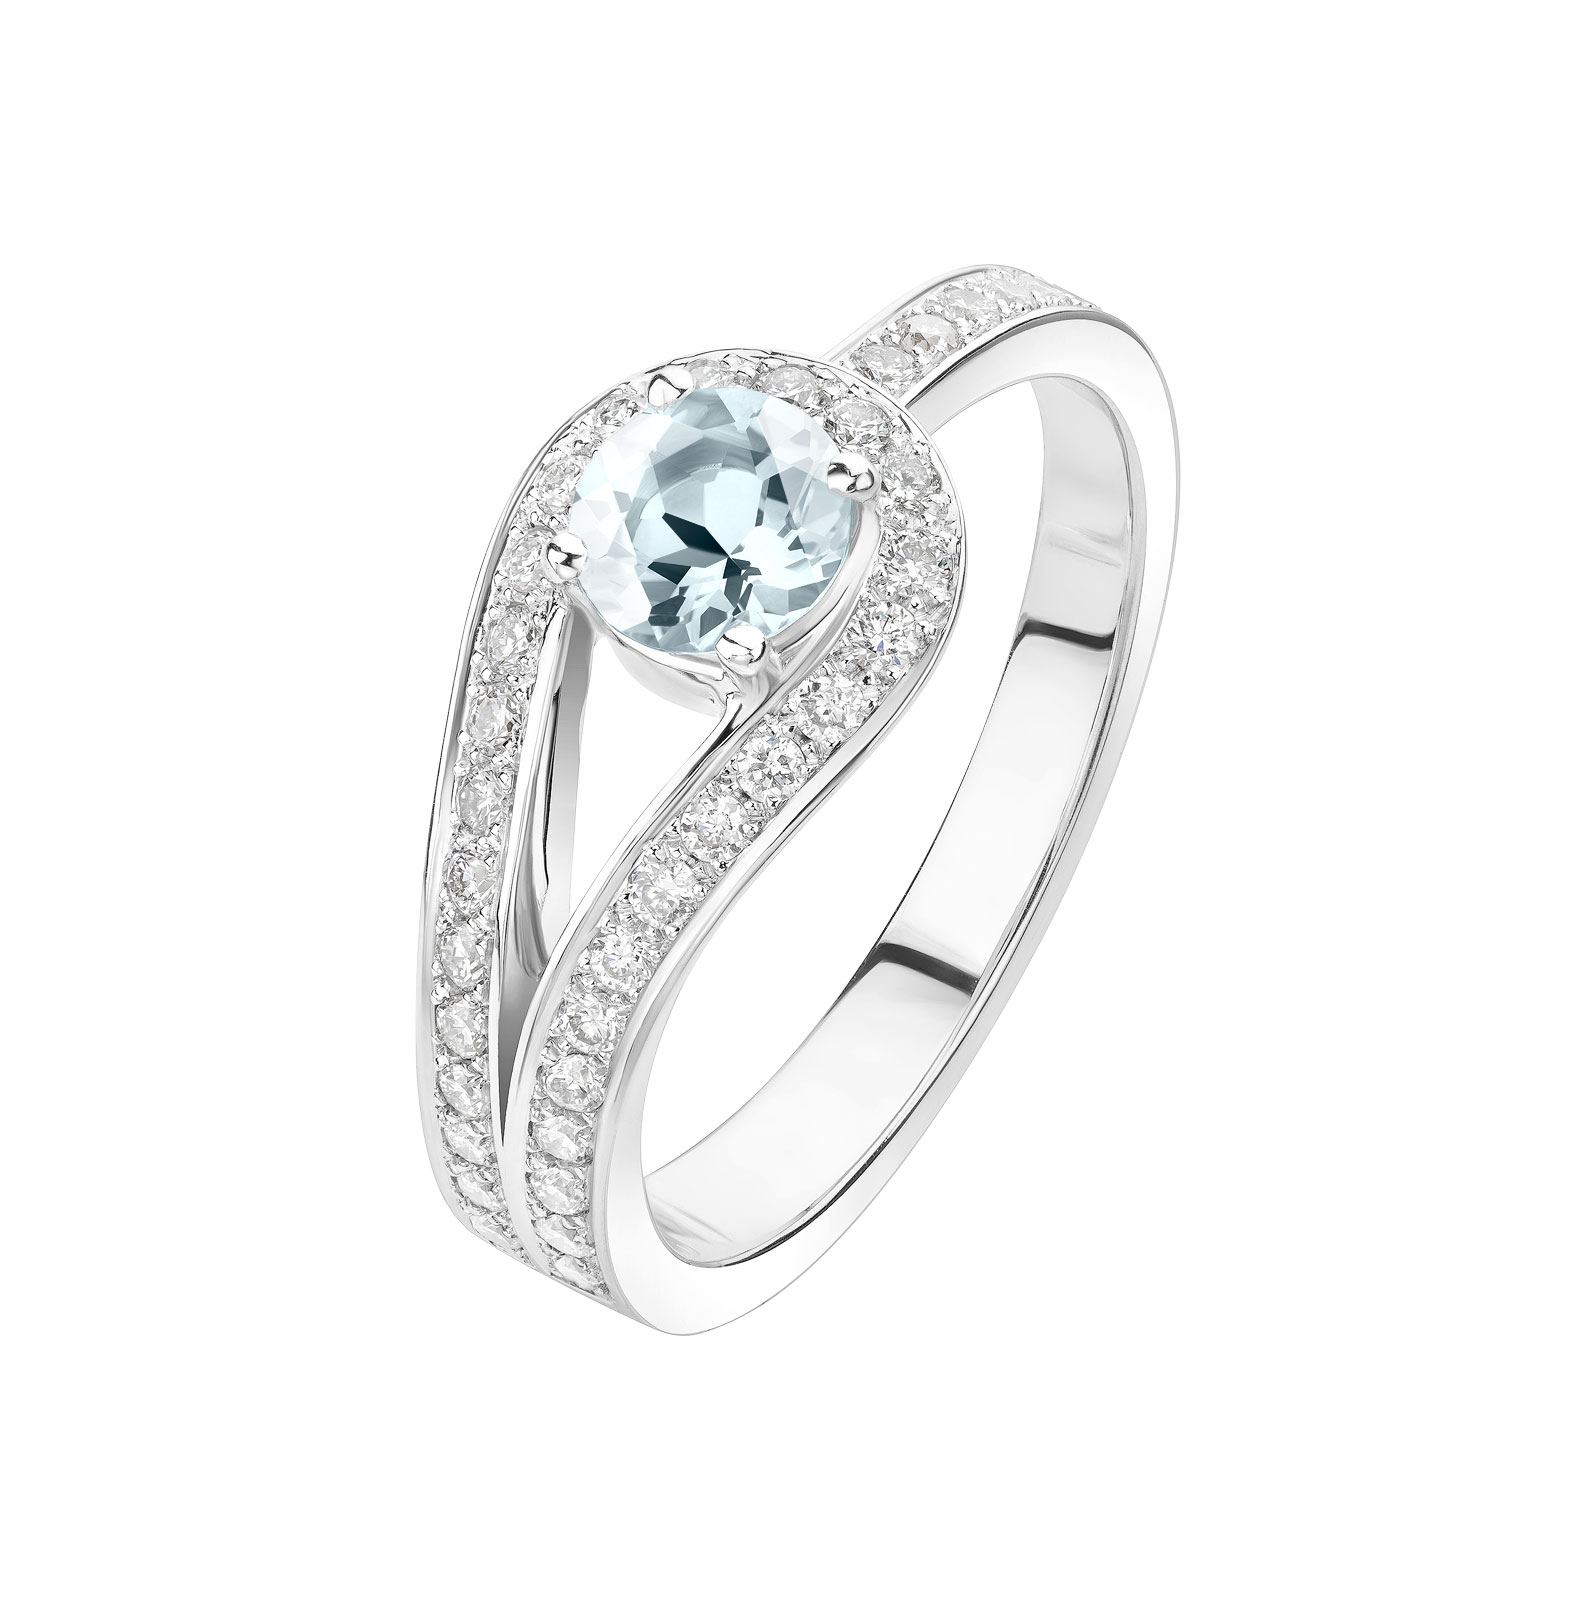 Ring White gold Aquamarine and diamonds Romy 1